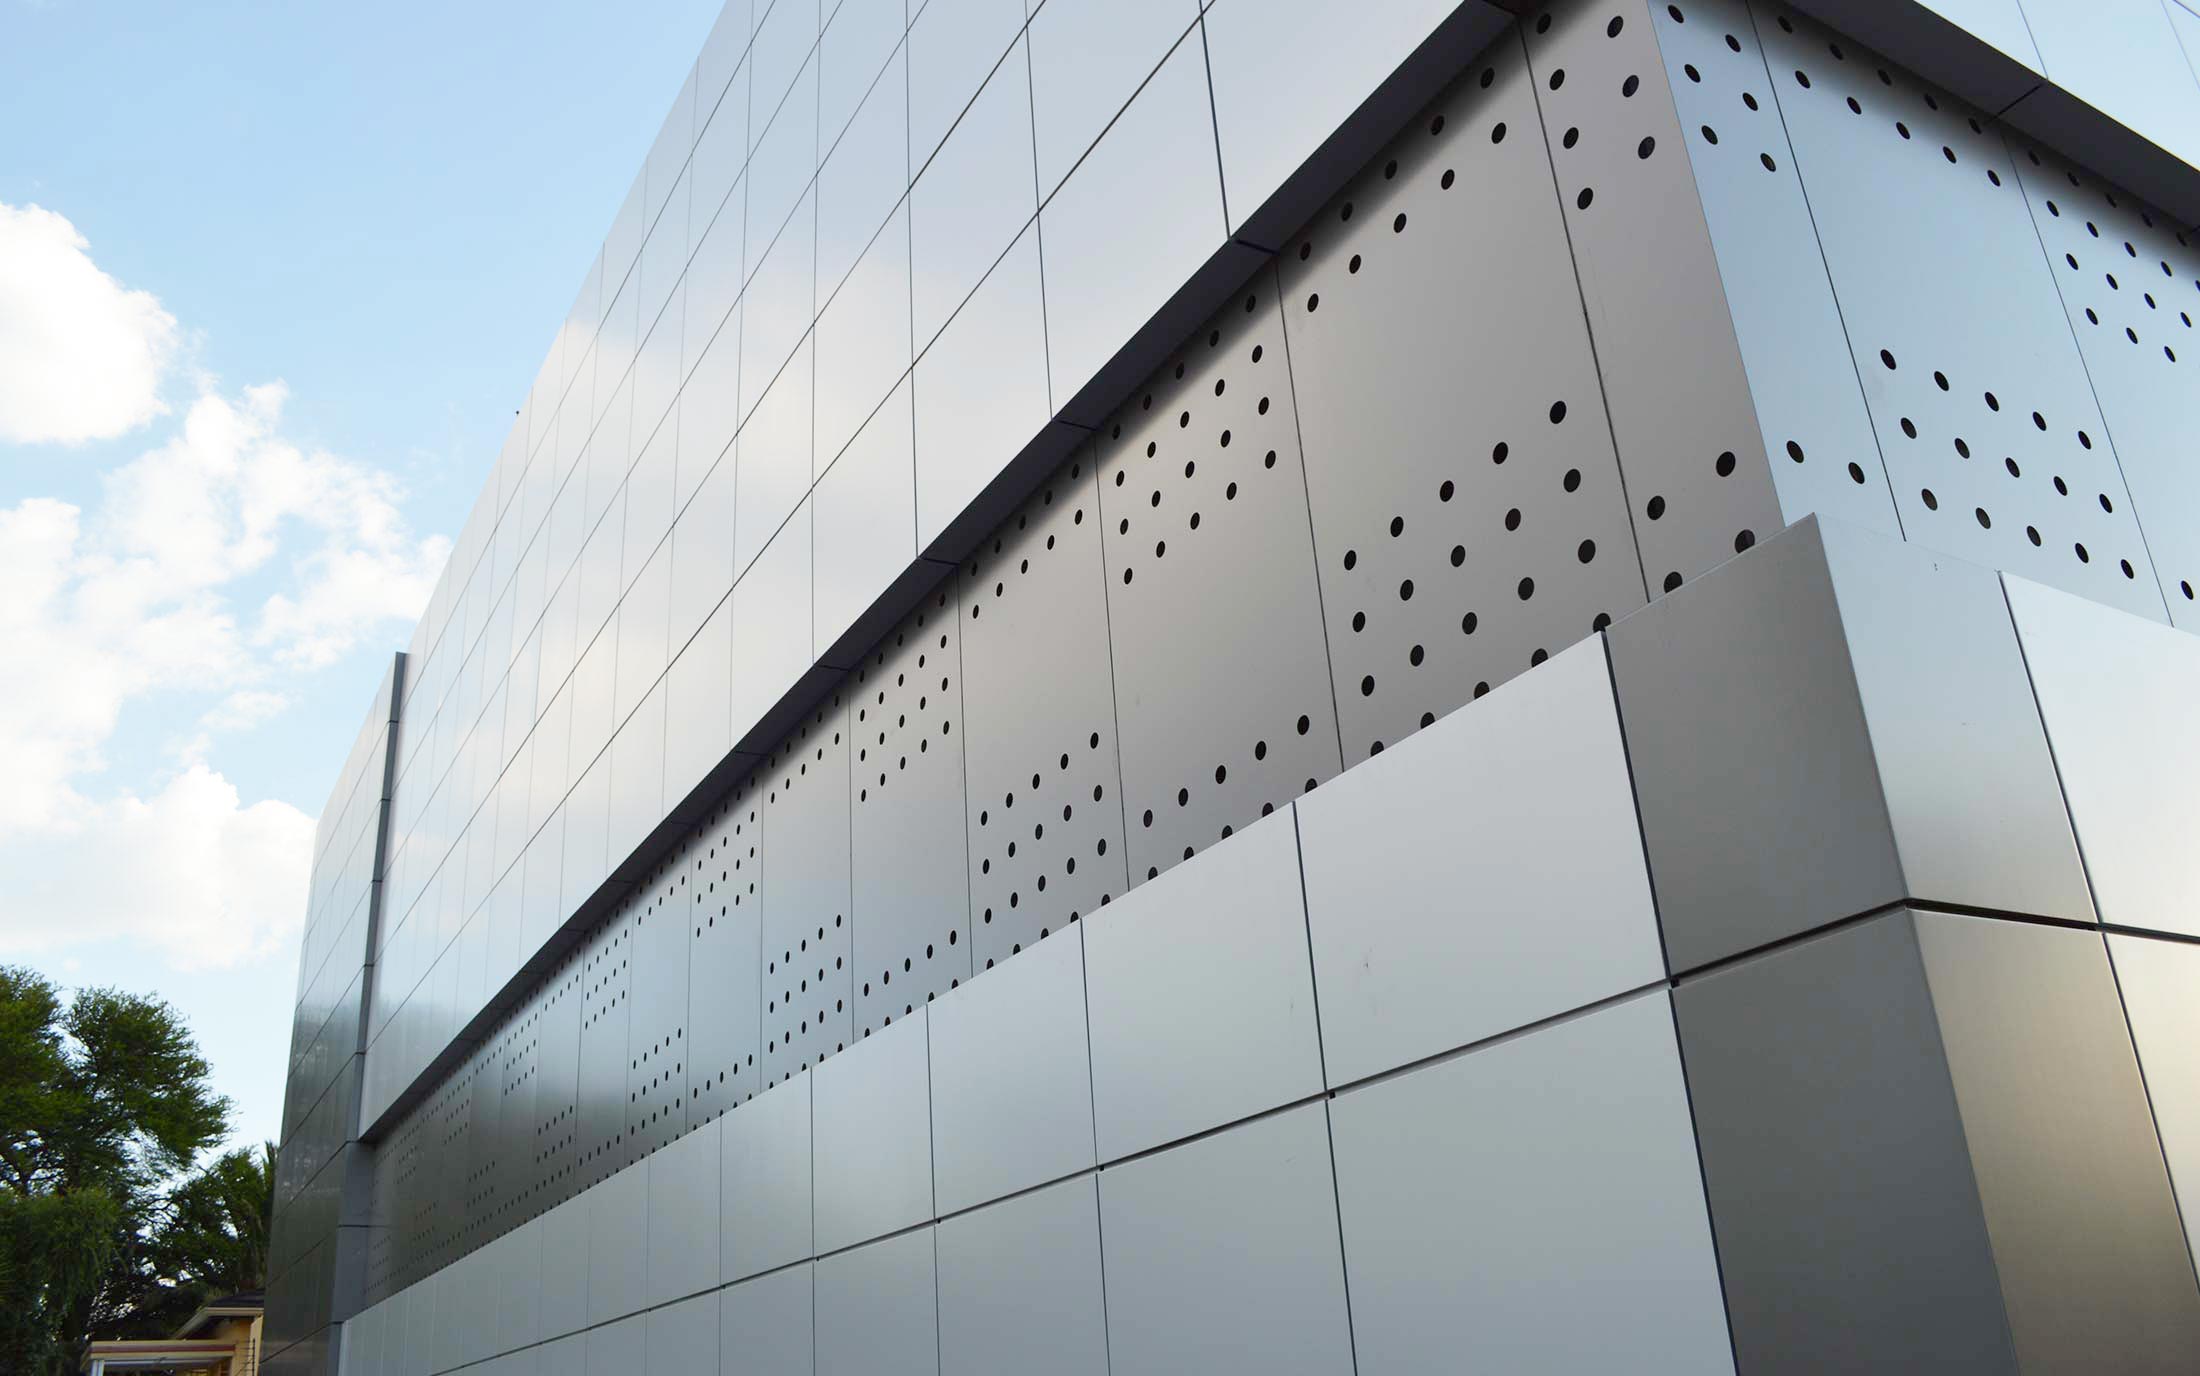 aluminium cladding panels